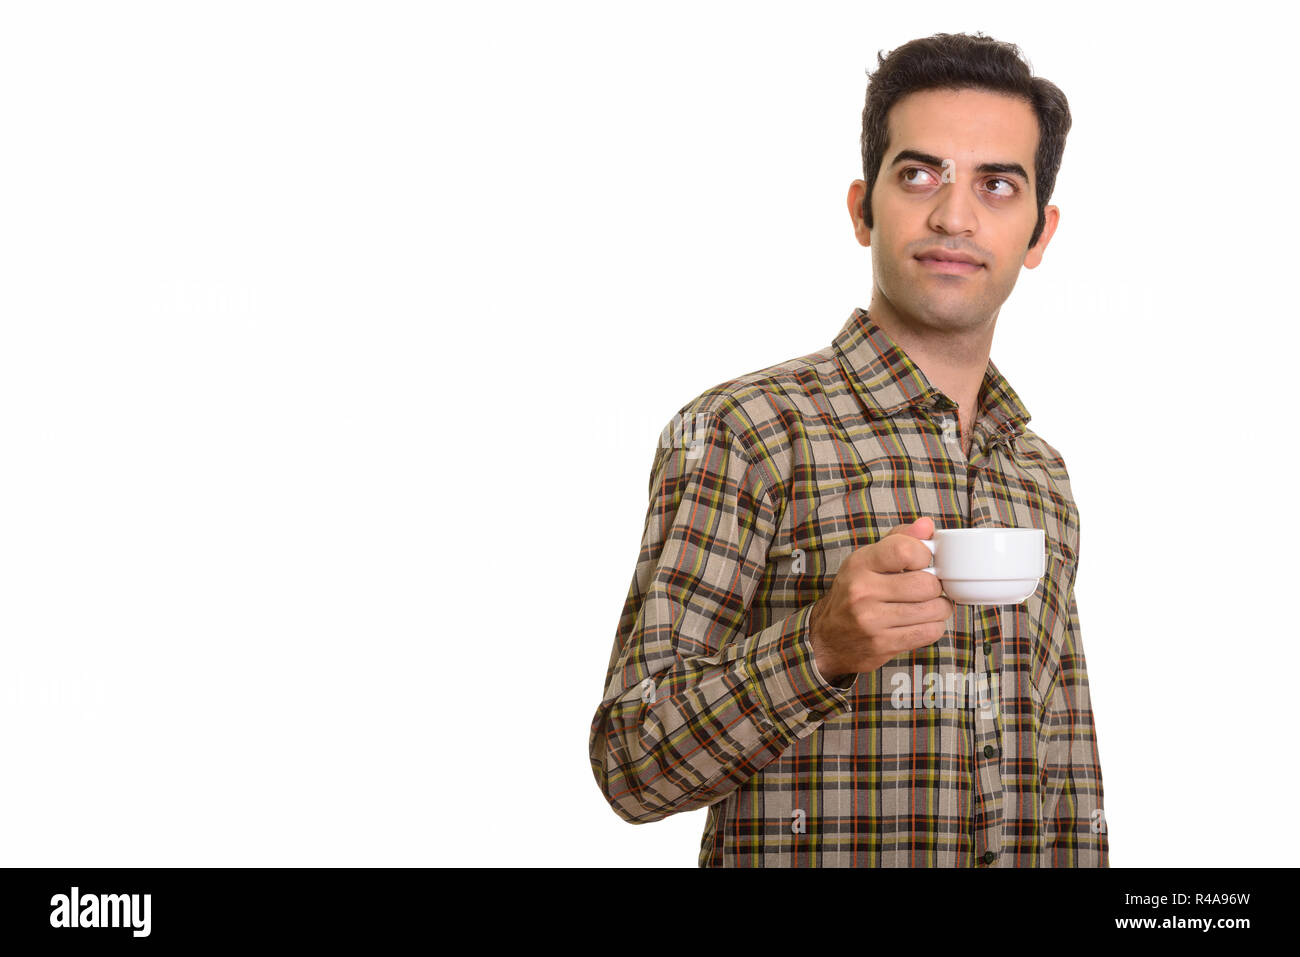 Jeune homme tandis que la pensée persane holding Coffee cup Banque D'Images